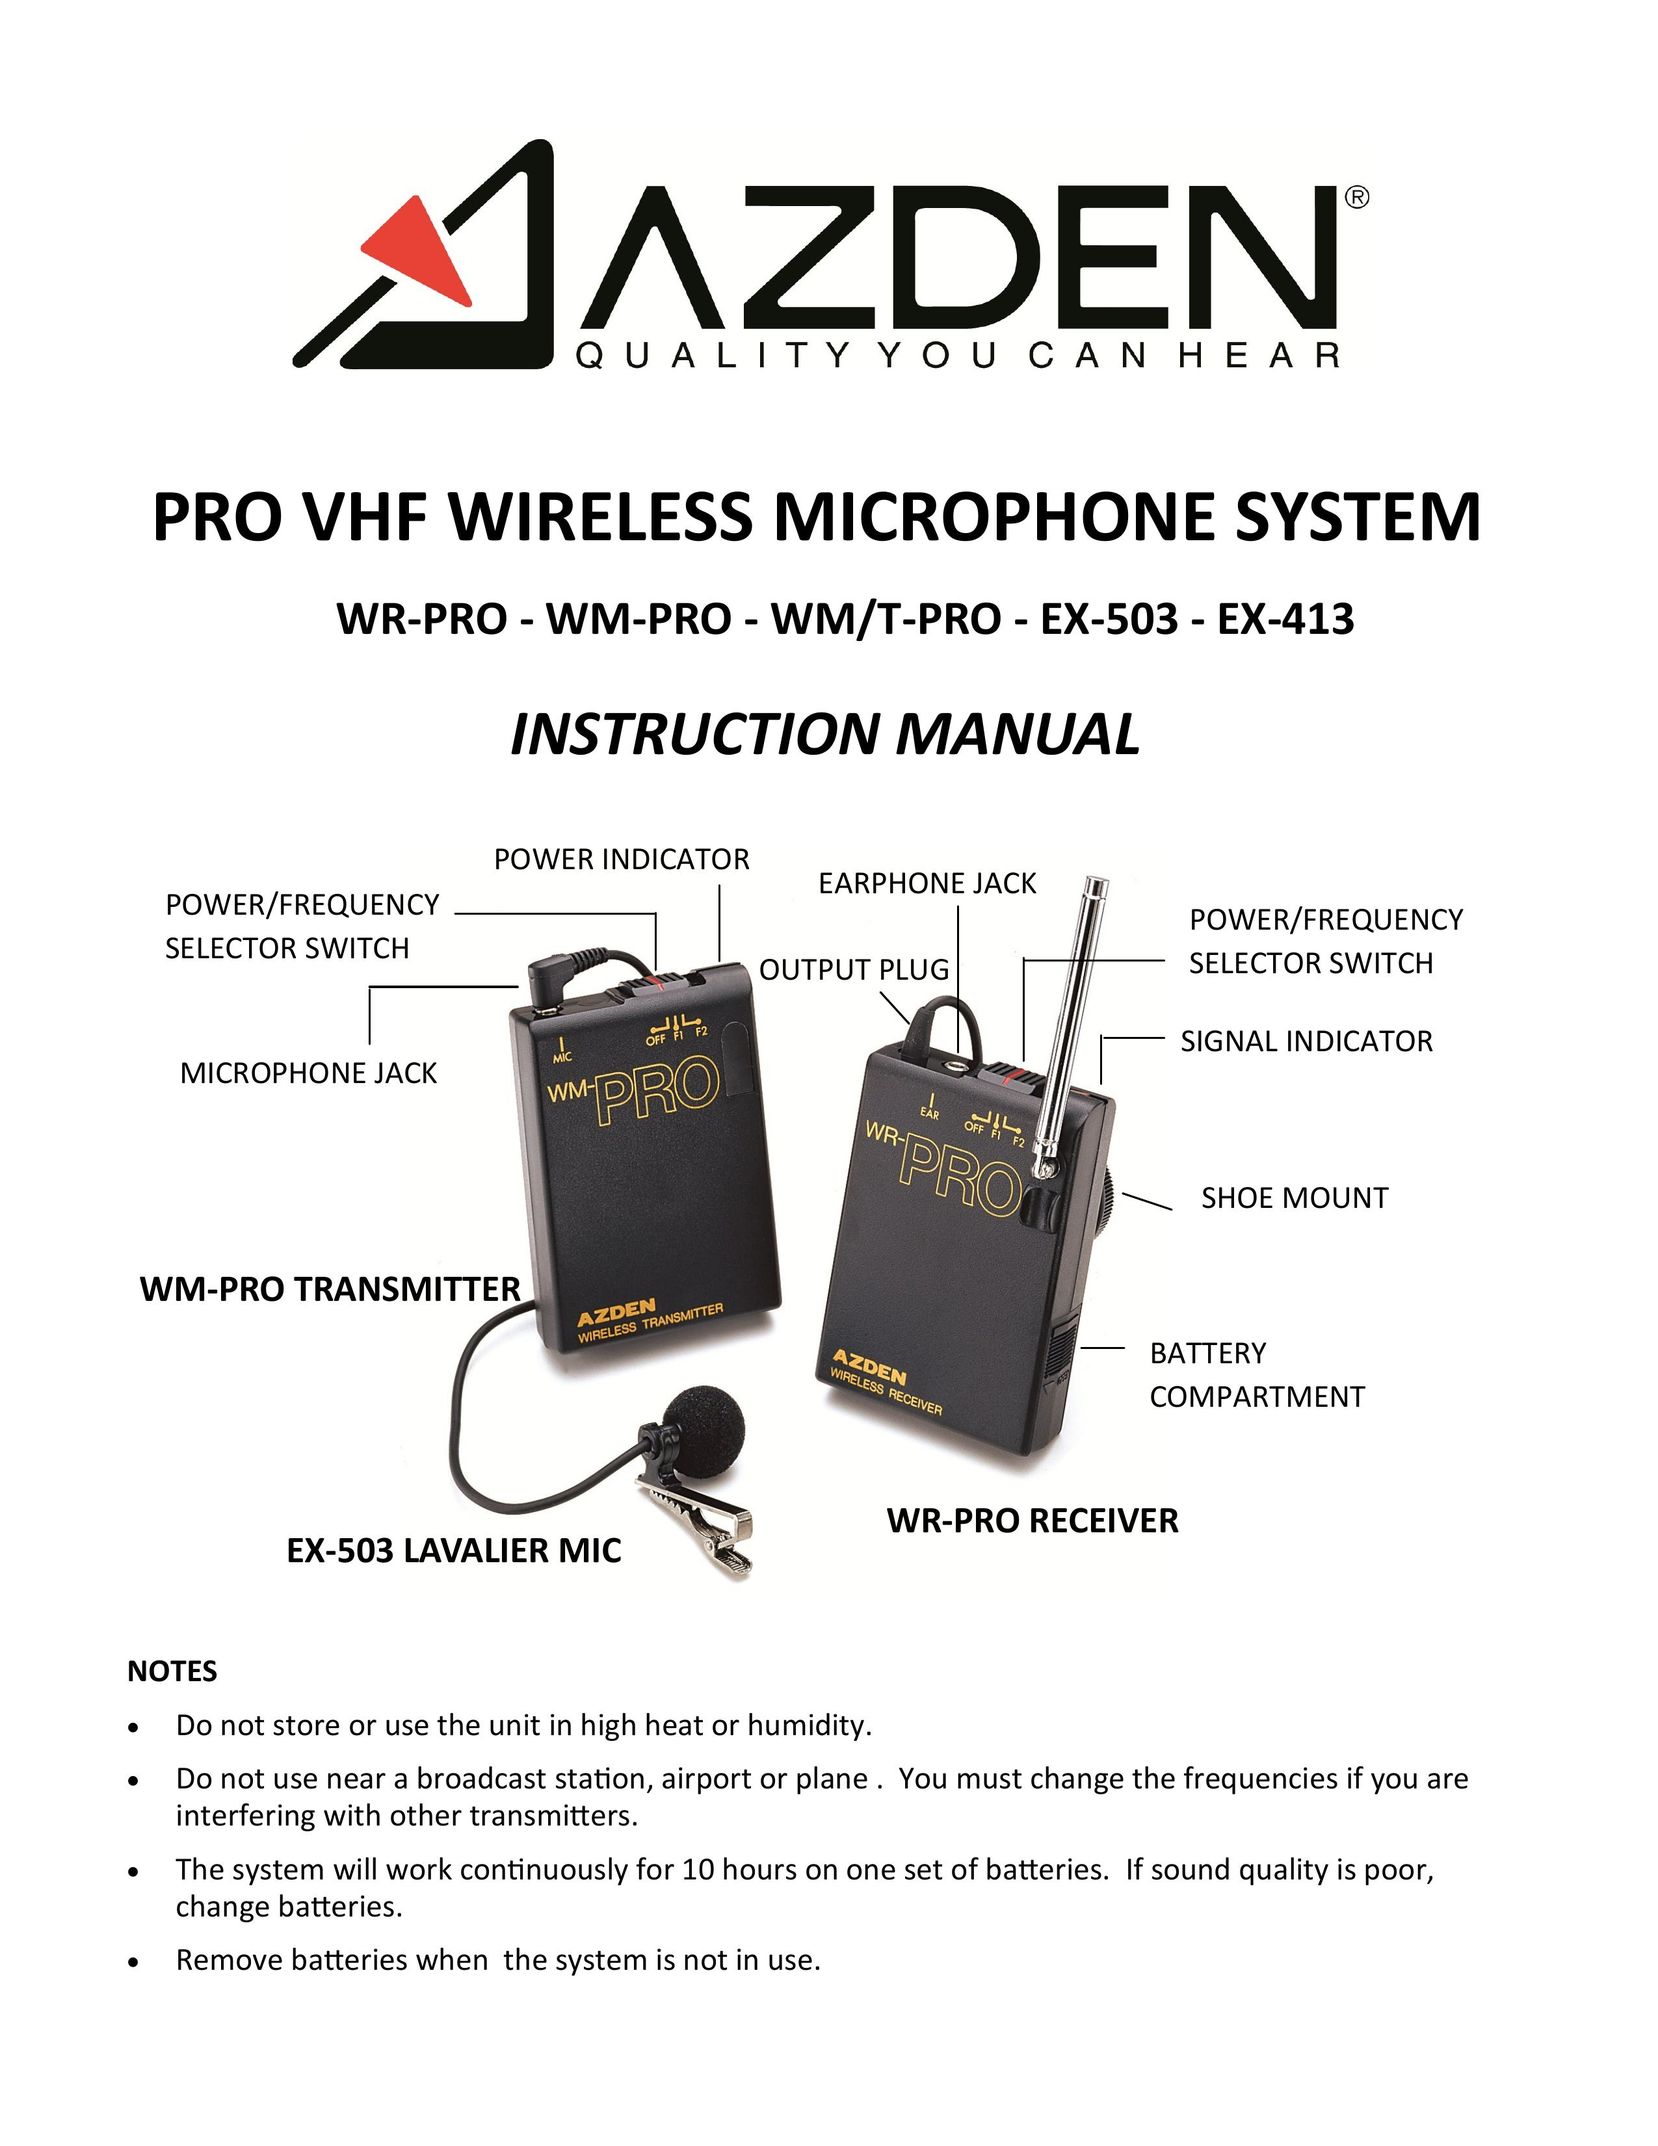 Azden WLTPRO Headphones User Manual